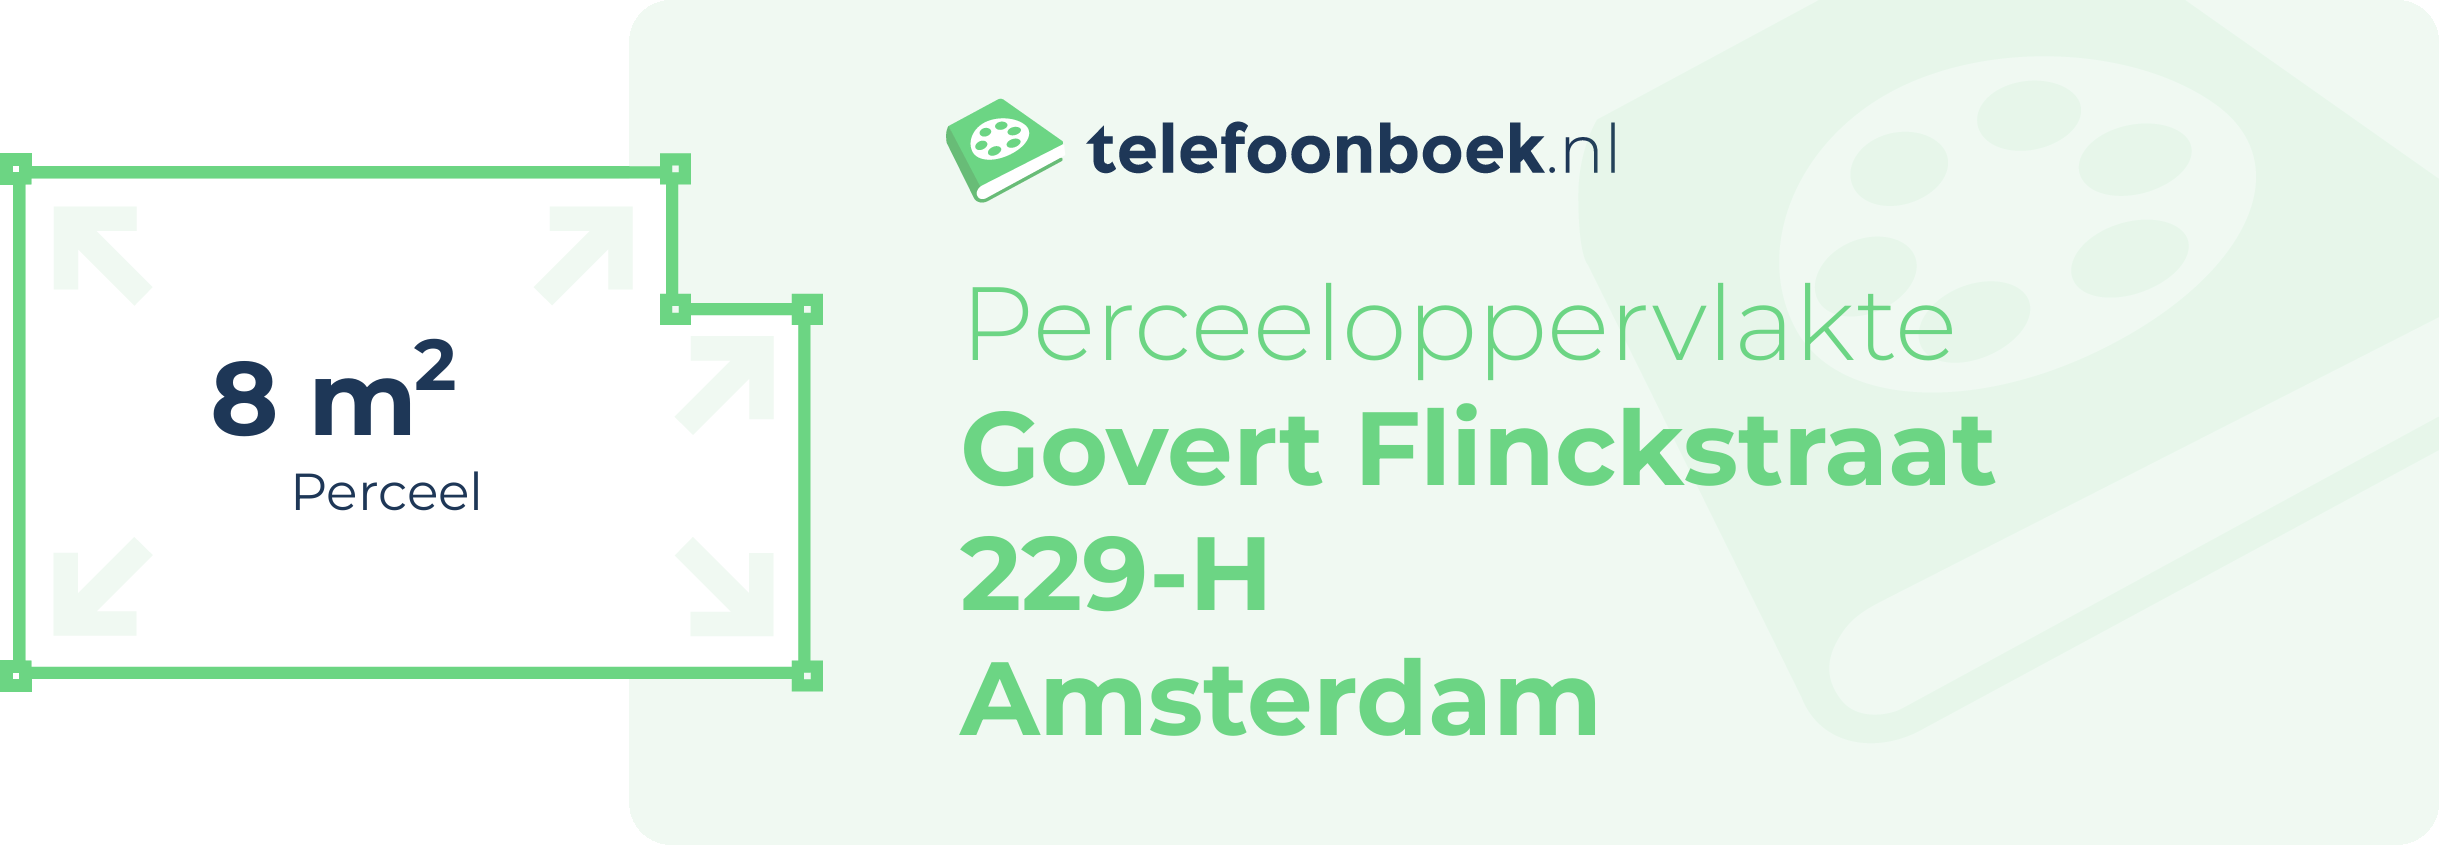 Perceeloppervlakte Govert Flinckstraat 229-H Amsterdam